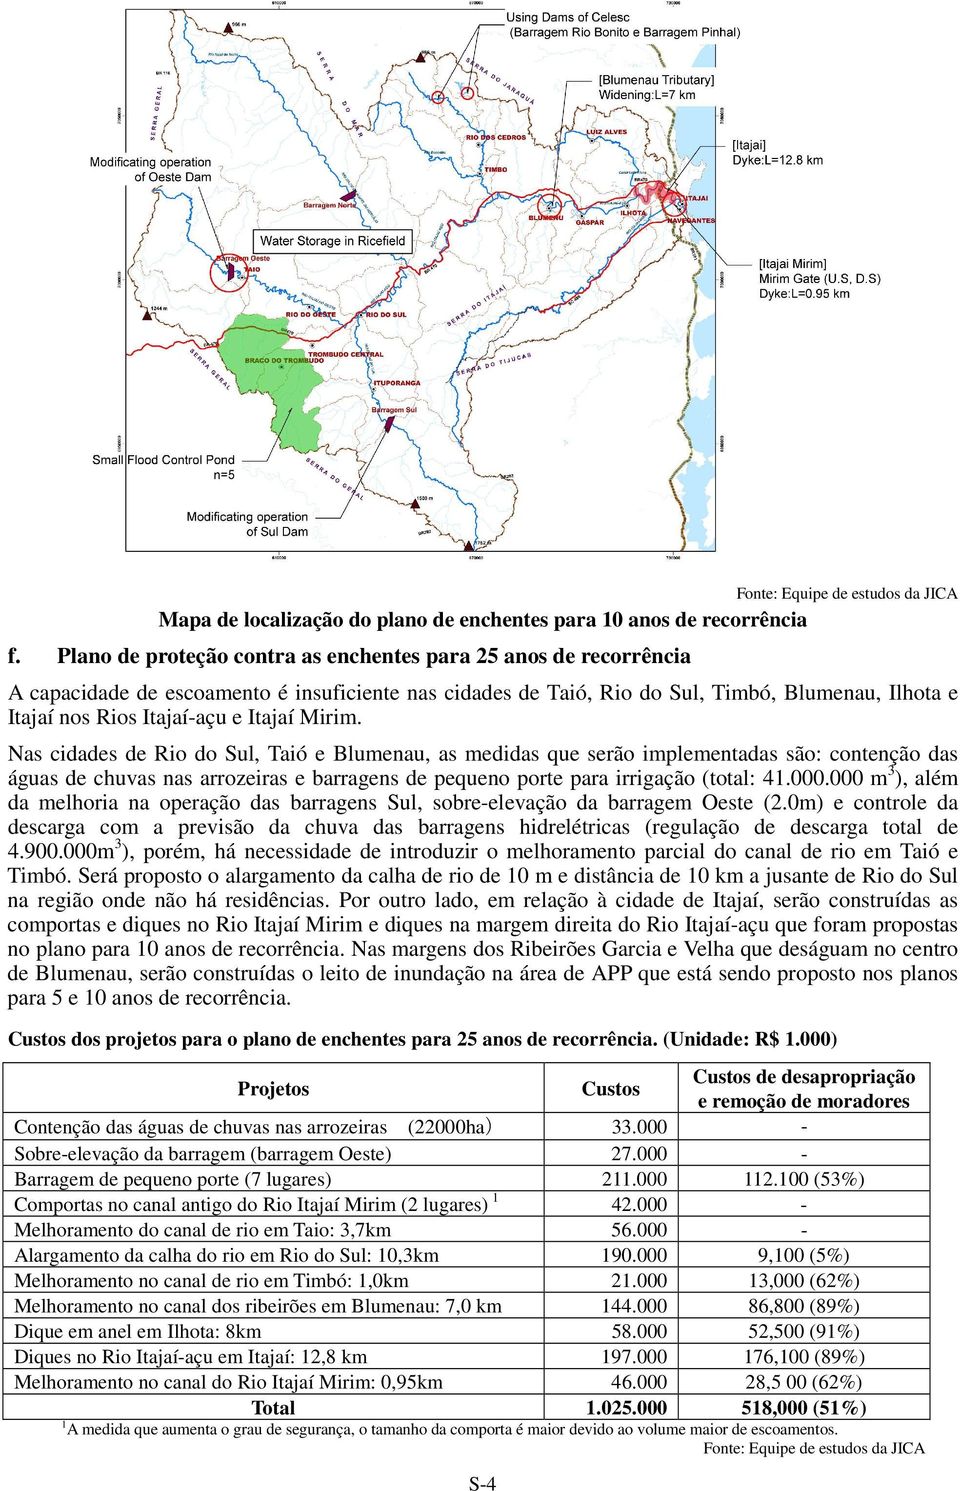 Itajaí Mirim. Nas cidades de Rio do Sul, Taió e Blumenau, as medidas que serão implementadas são: contenção das águas de chuvas nas arrozeiras e barragens de pequeno porte para irrigação (total: 41.